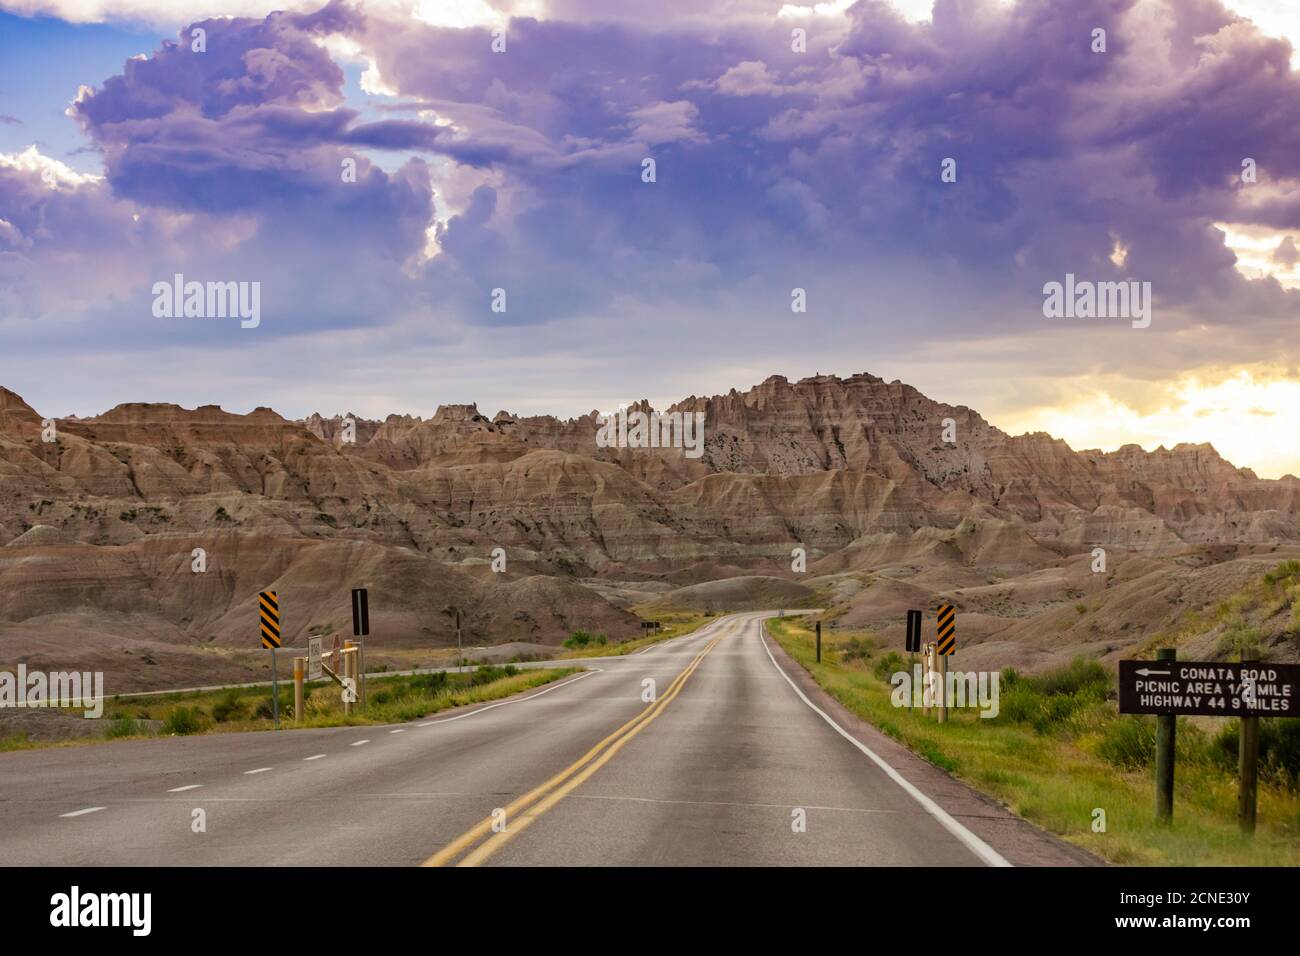 Conducción y turismo en el Parque Nacional de Badlands, Dakota del Sur, Estados Unidos de América Foto de stock